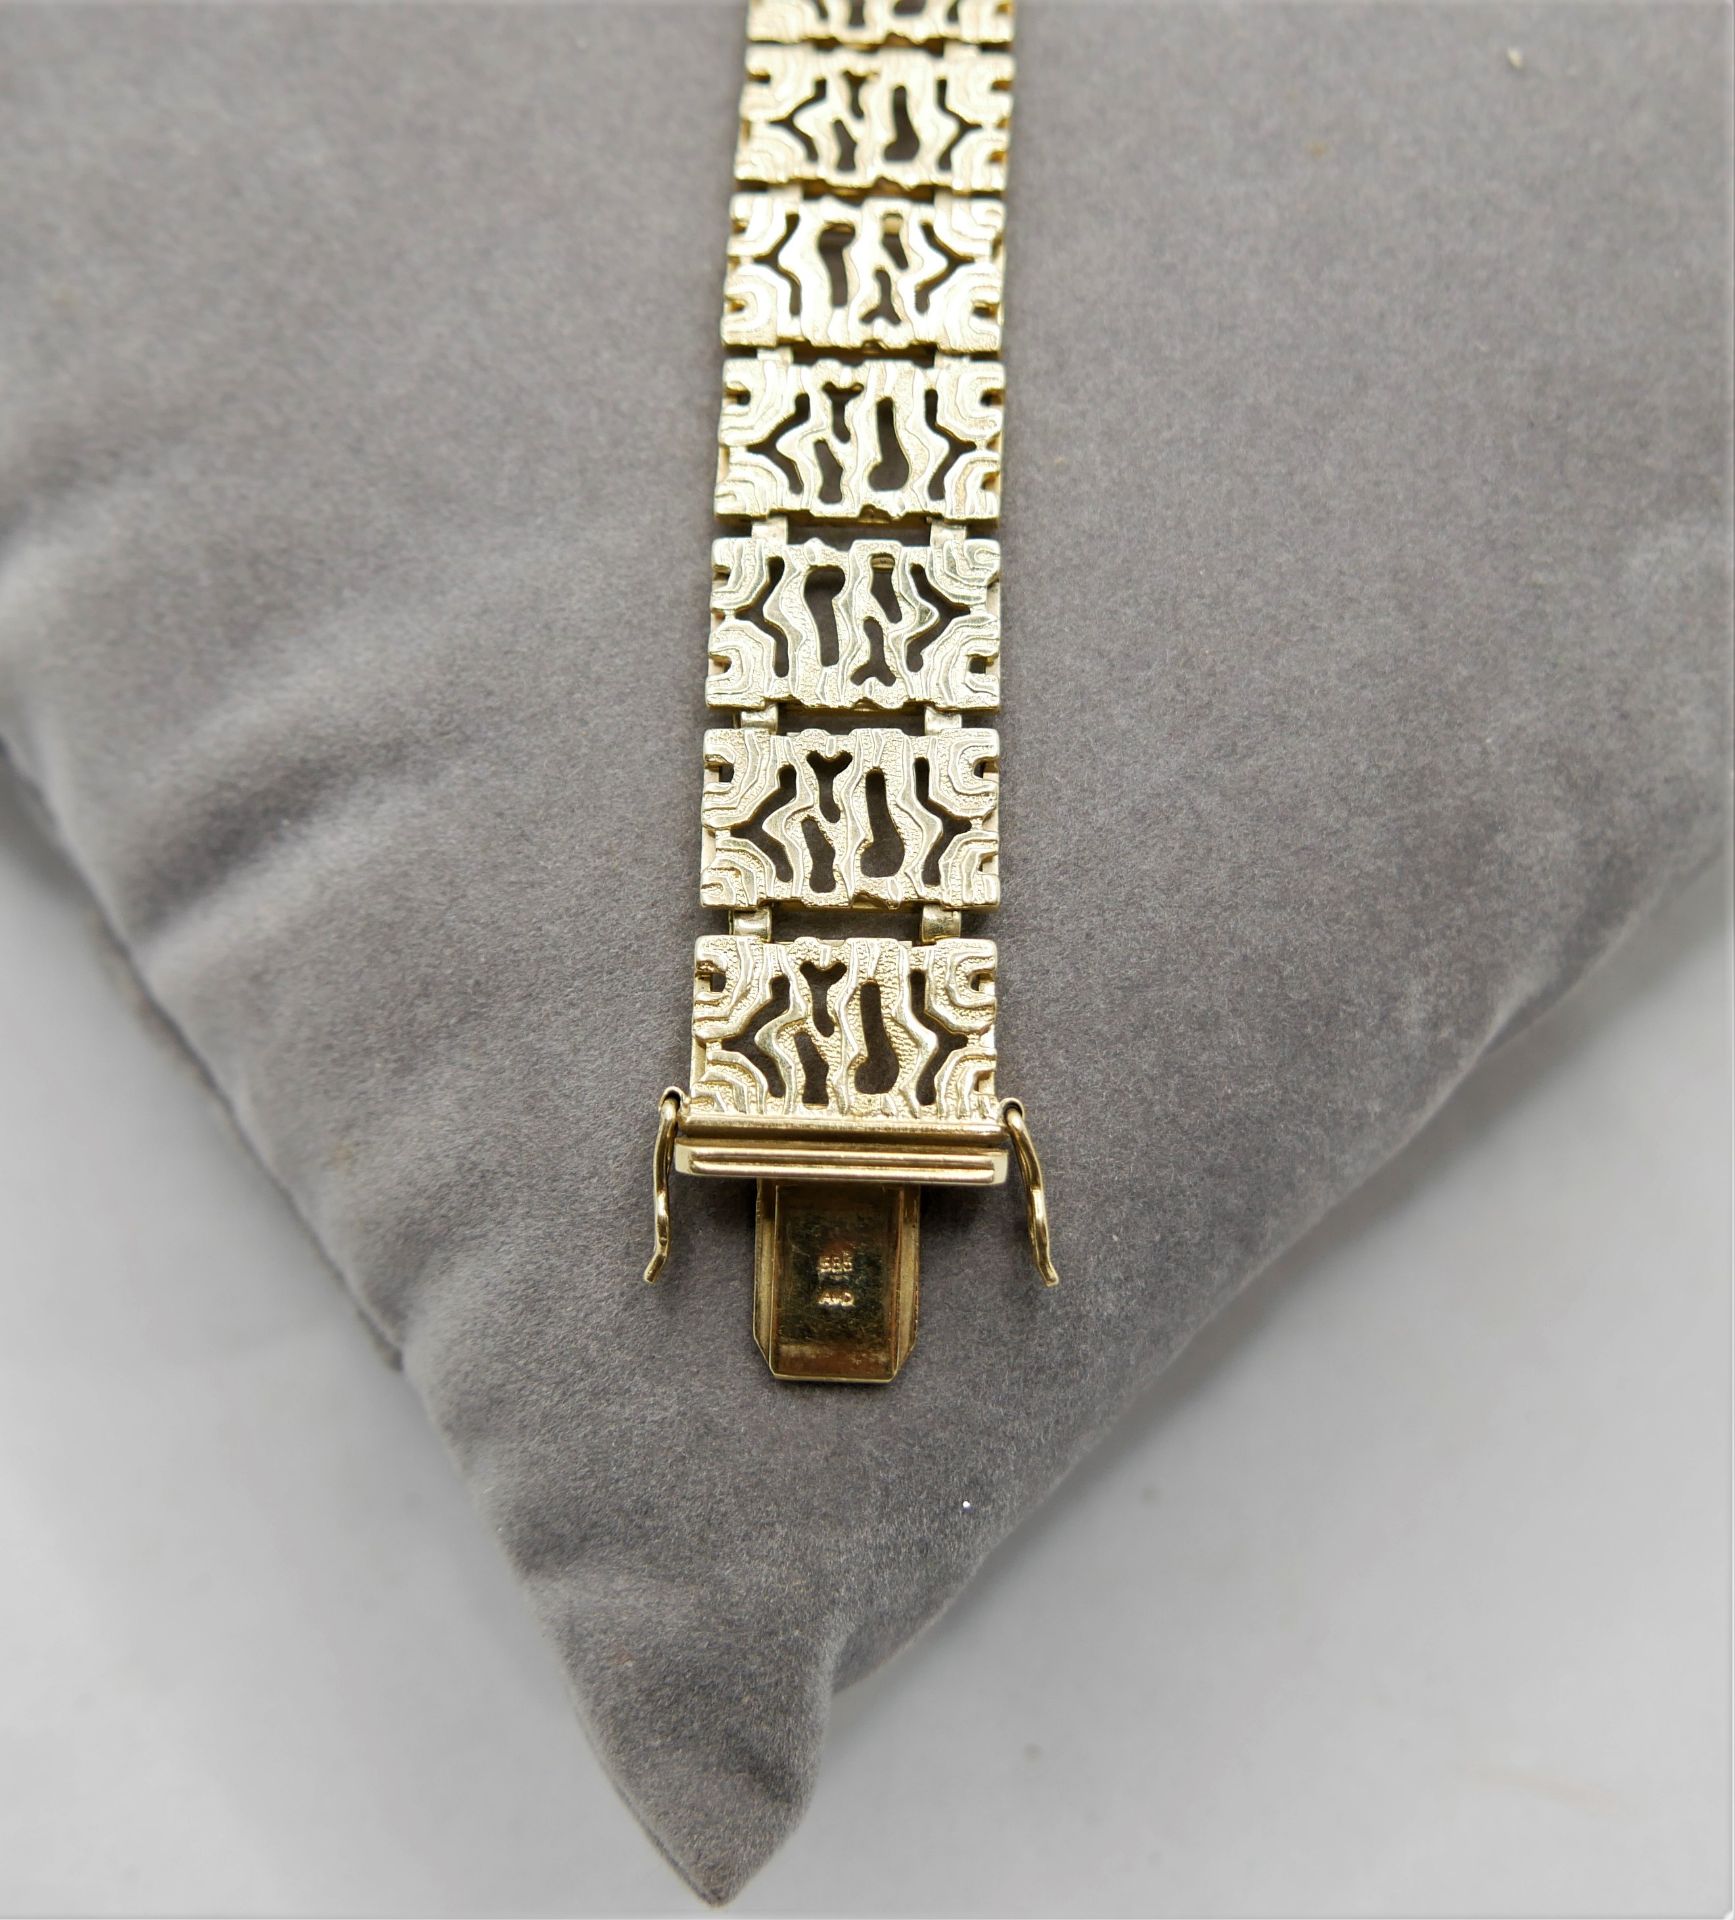 Armband, 585er Gelbgold, mit Sicherheitsverschluß. Länge ca. 20 cm, Gewicht ca. 35 gr - Bild 3 aus 3